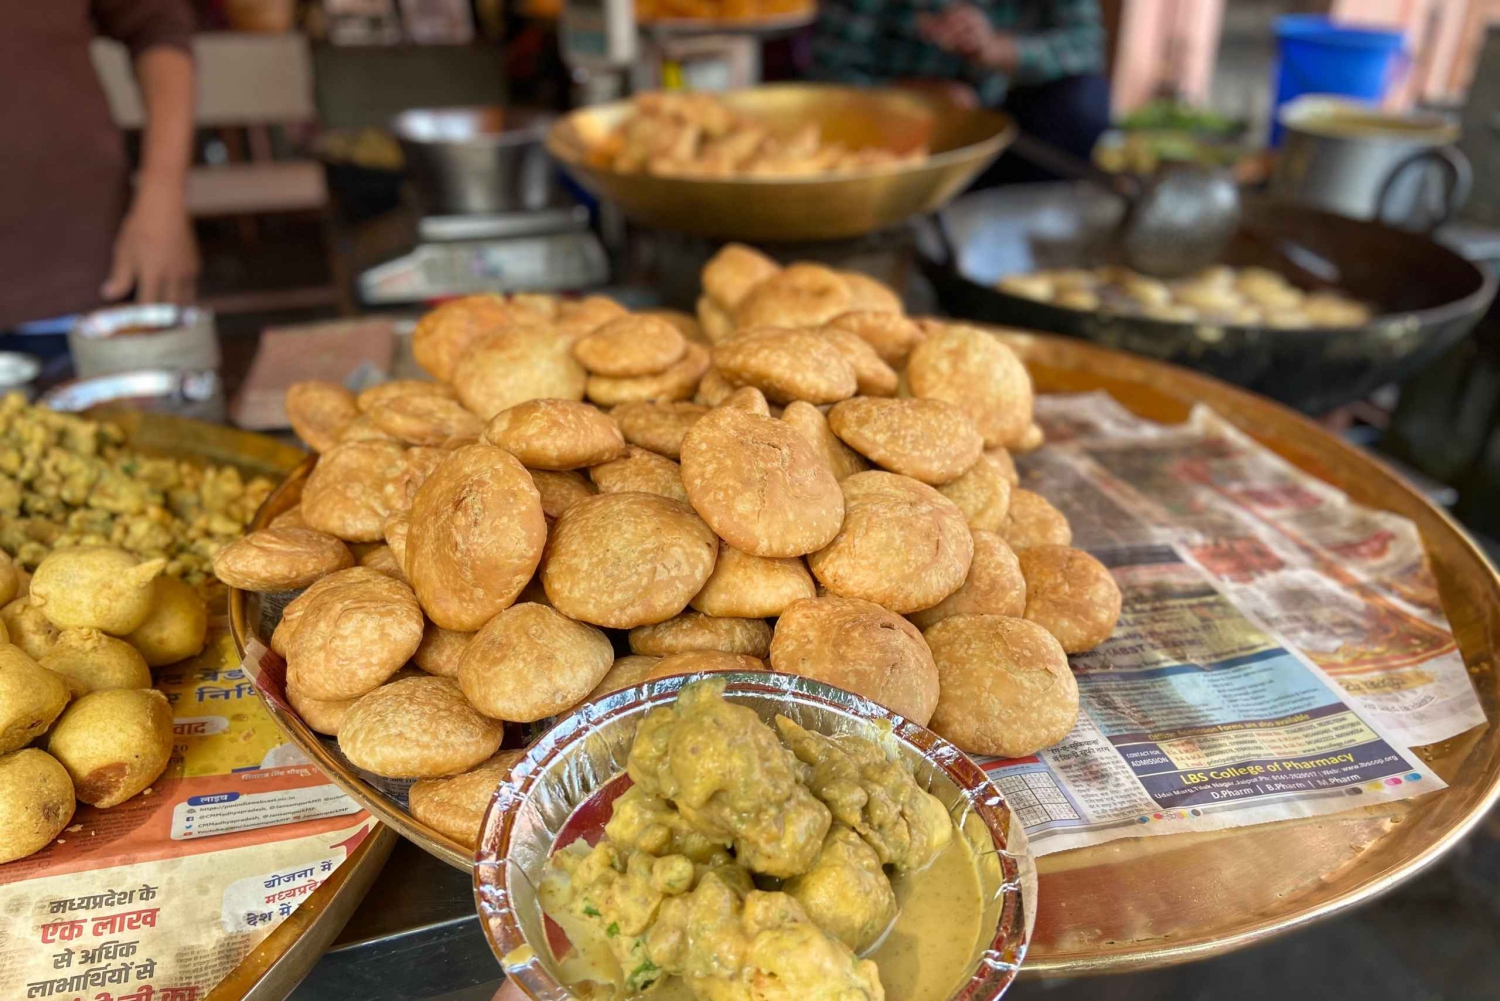 Jaipur: Visita guiada con desayuno y paseo por la ciudad vieja de Jaipur